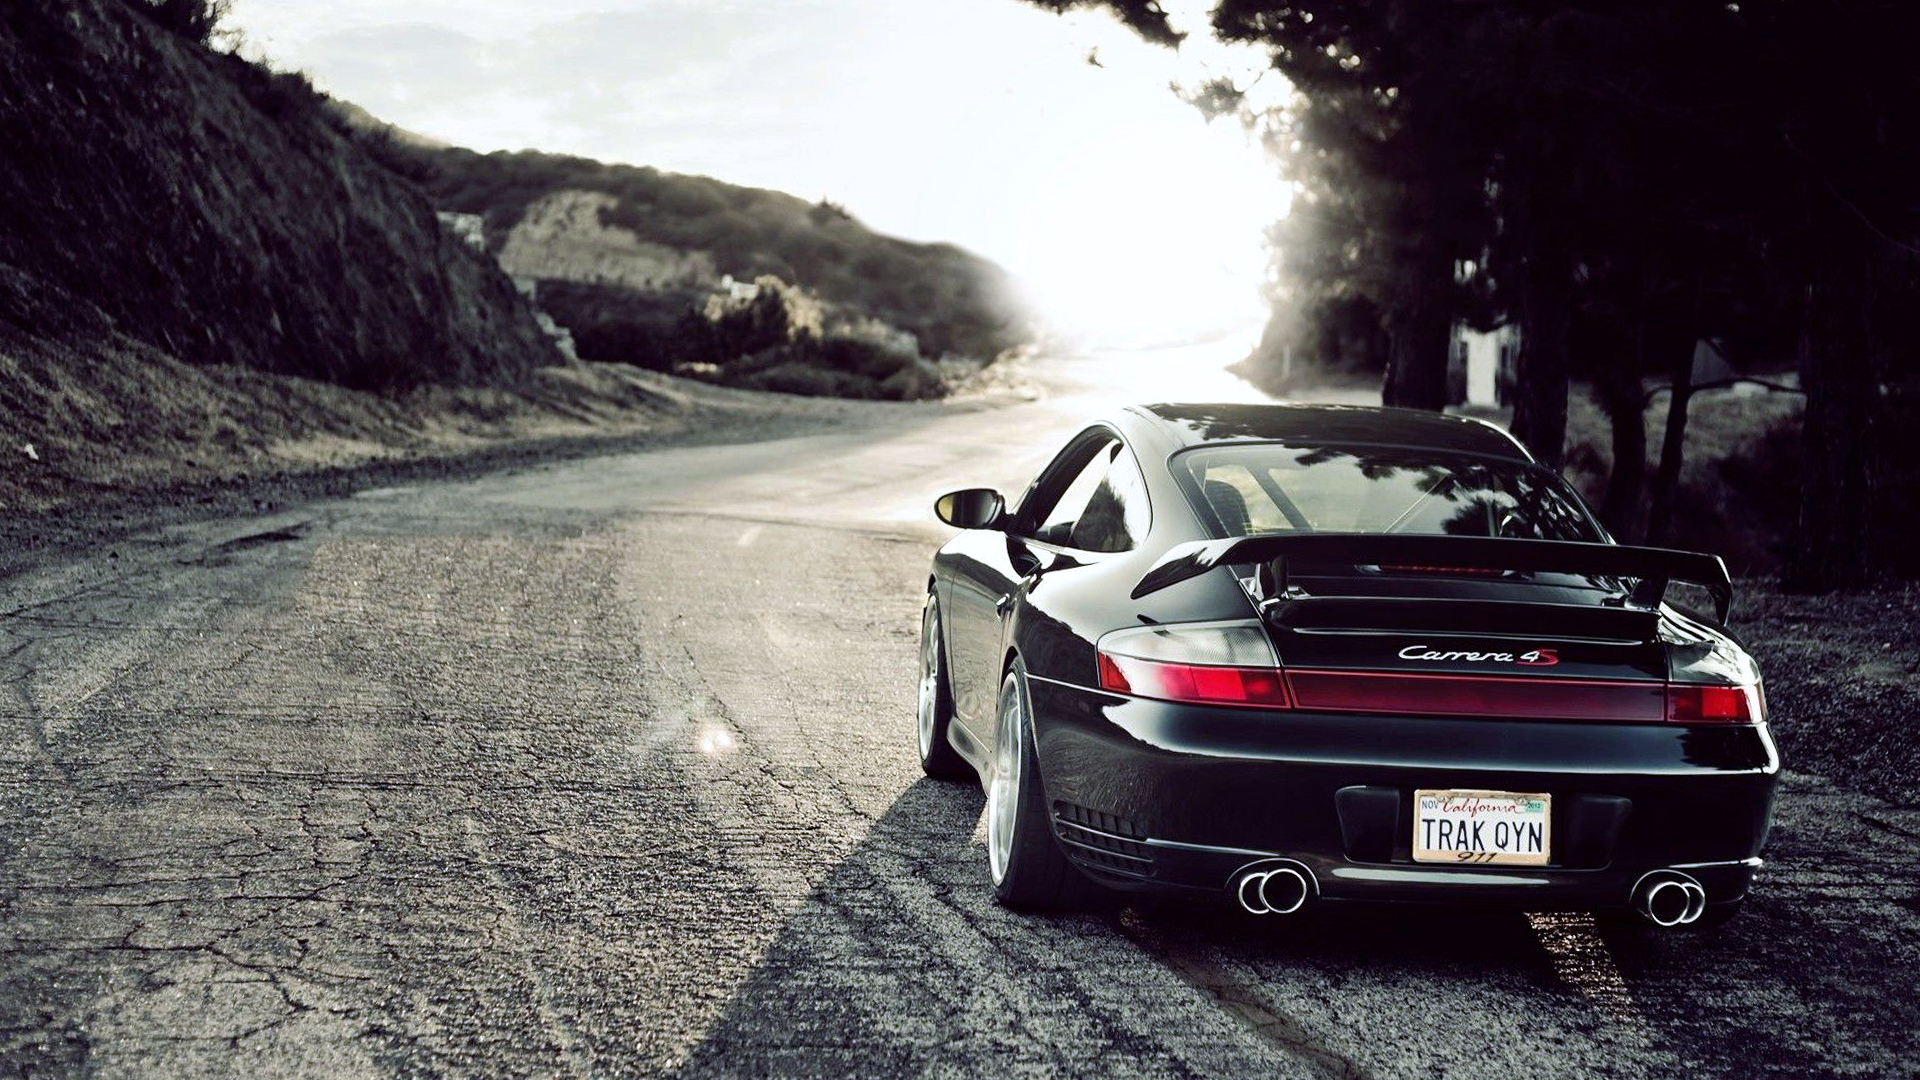 Porsche 911 Car Landscape Best Wallpaper